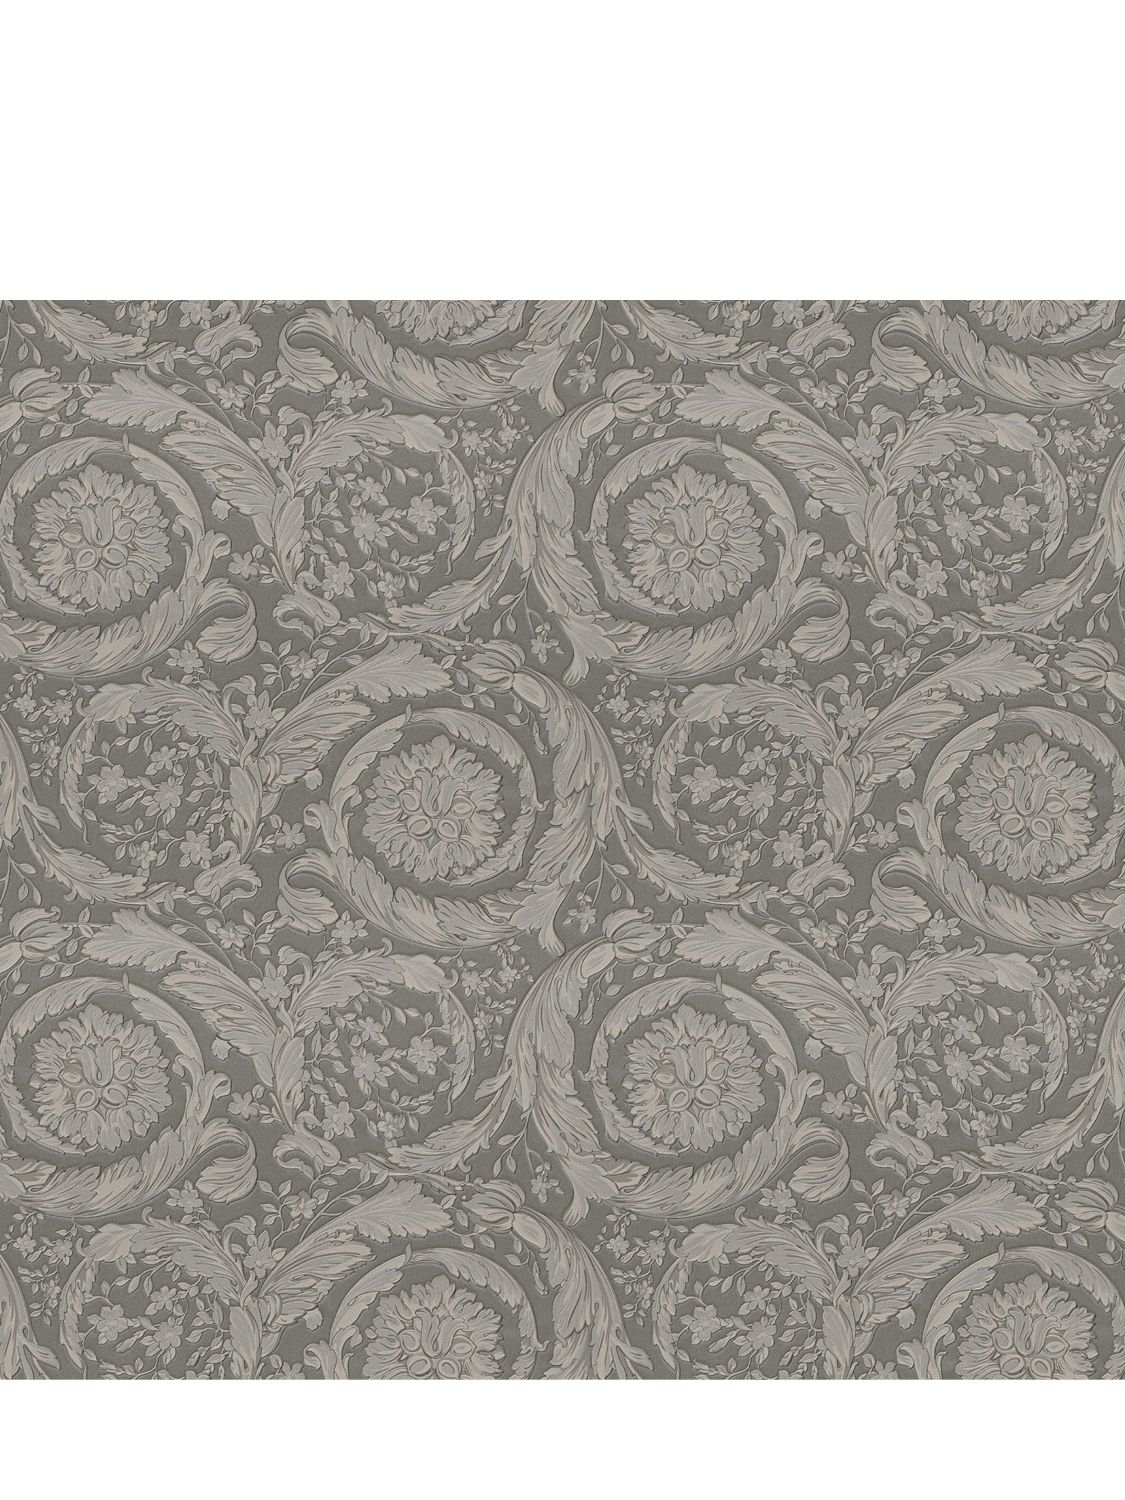 Versace Barocco Printed Wallpaper In Grey